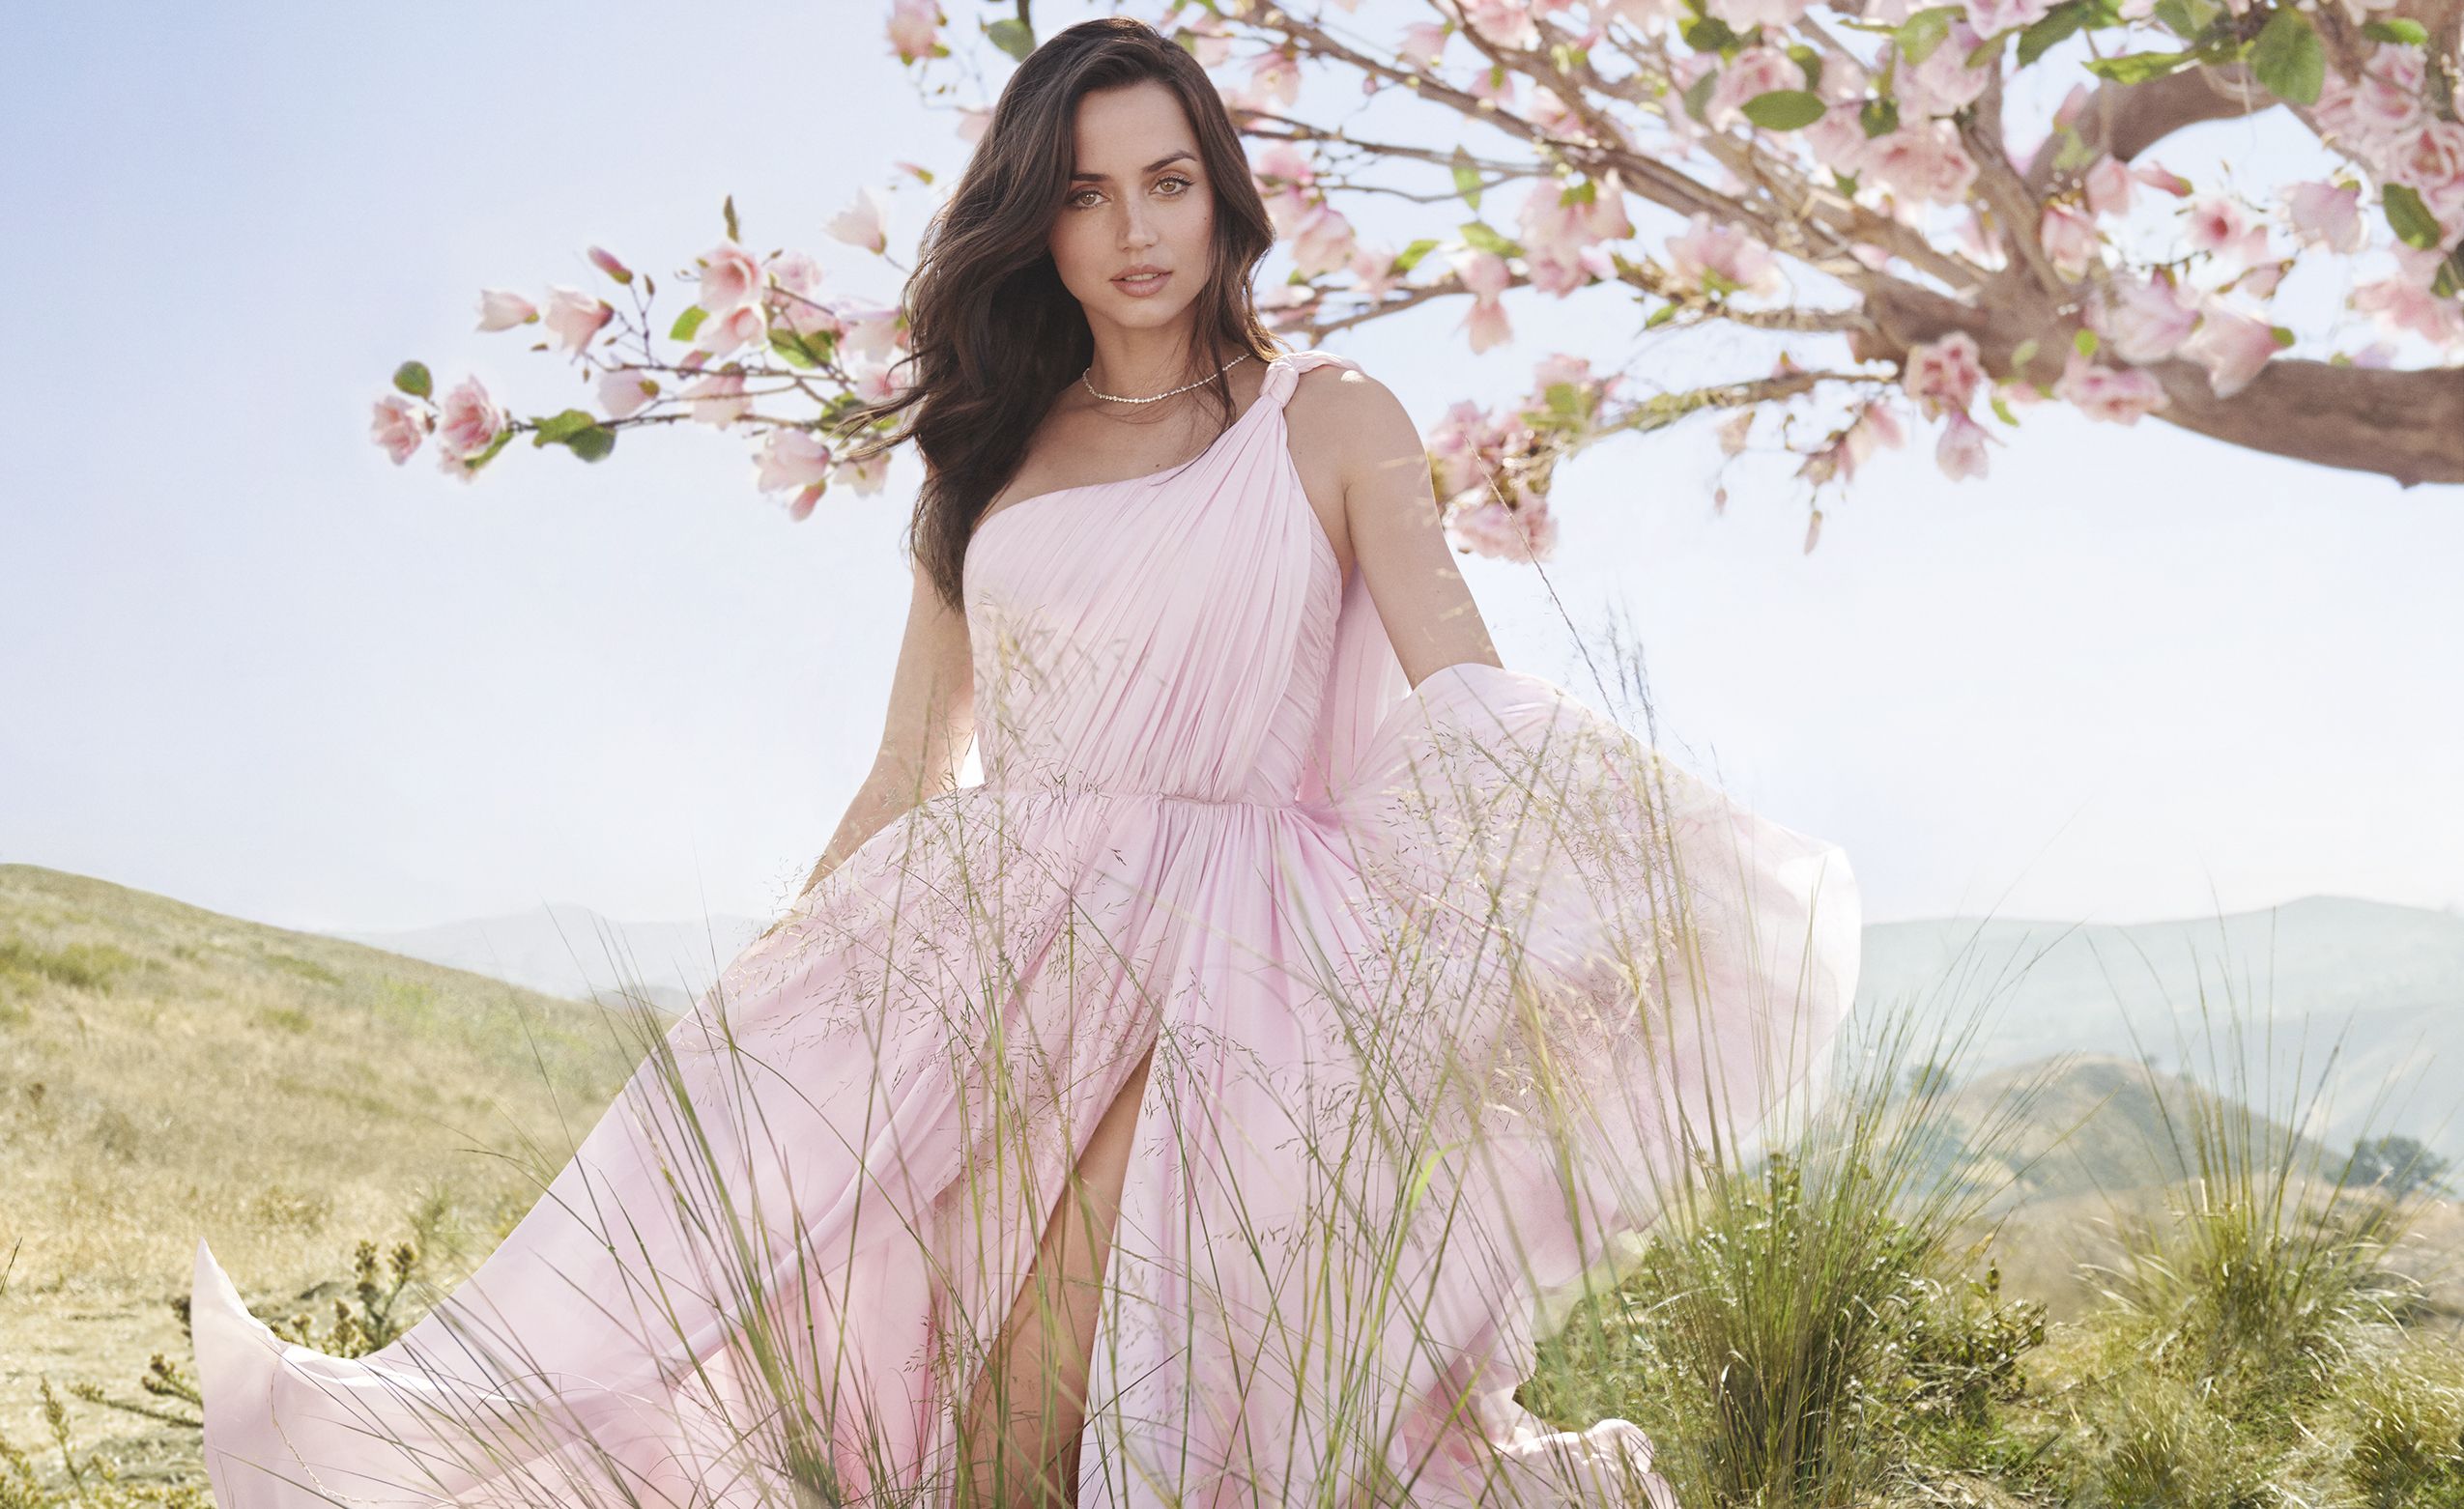 Ana De Armas Actress Brunette Green Eyes Looking At Viewer Women Pink Dress Flowers Women Outdoors 2550x1562